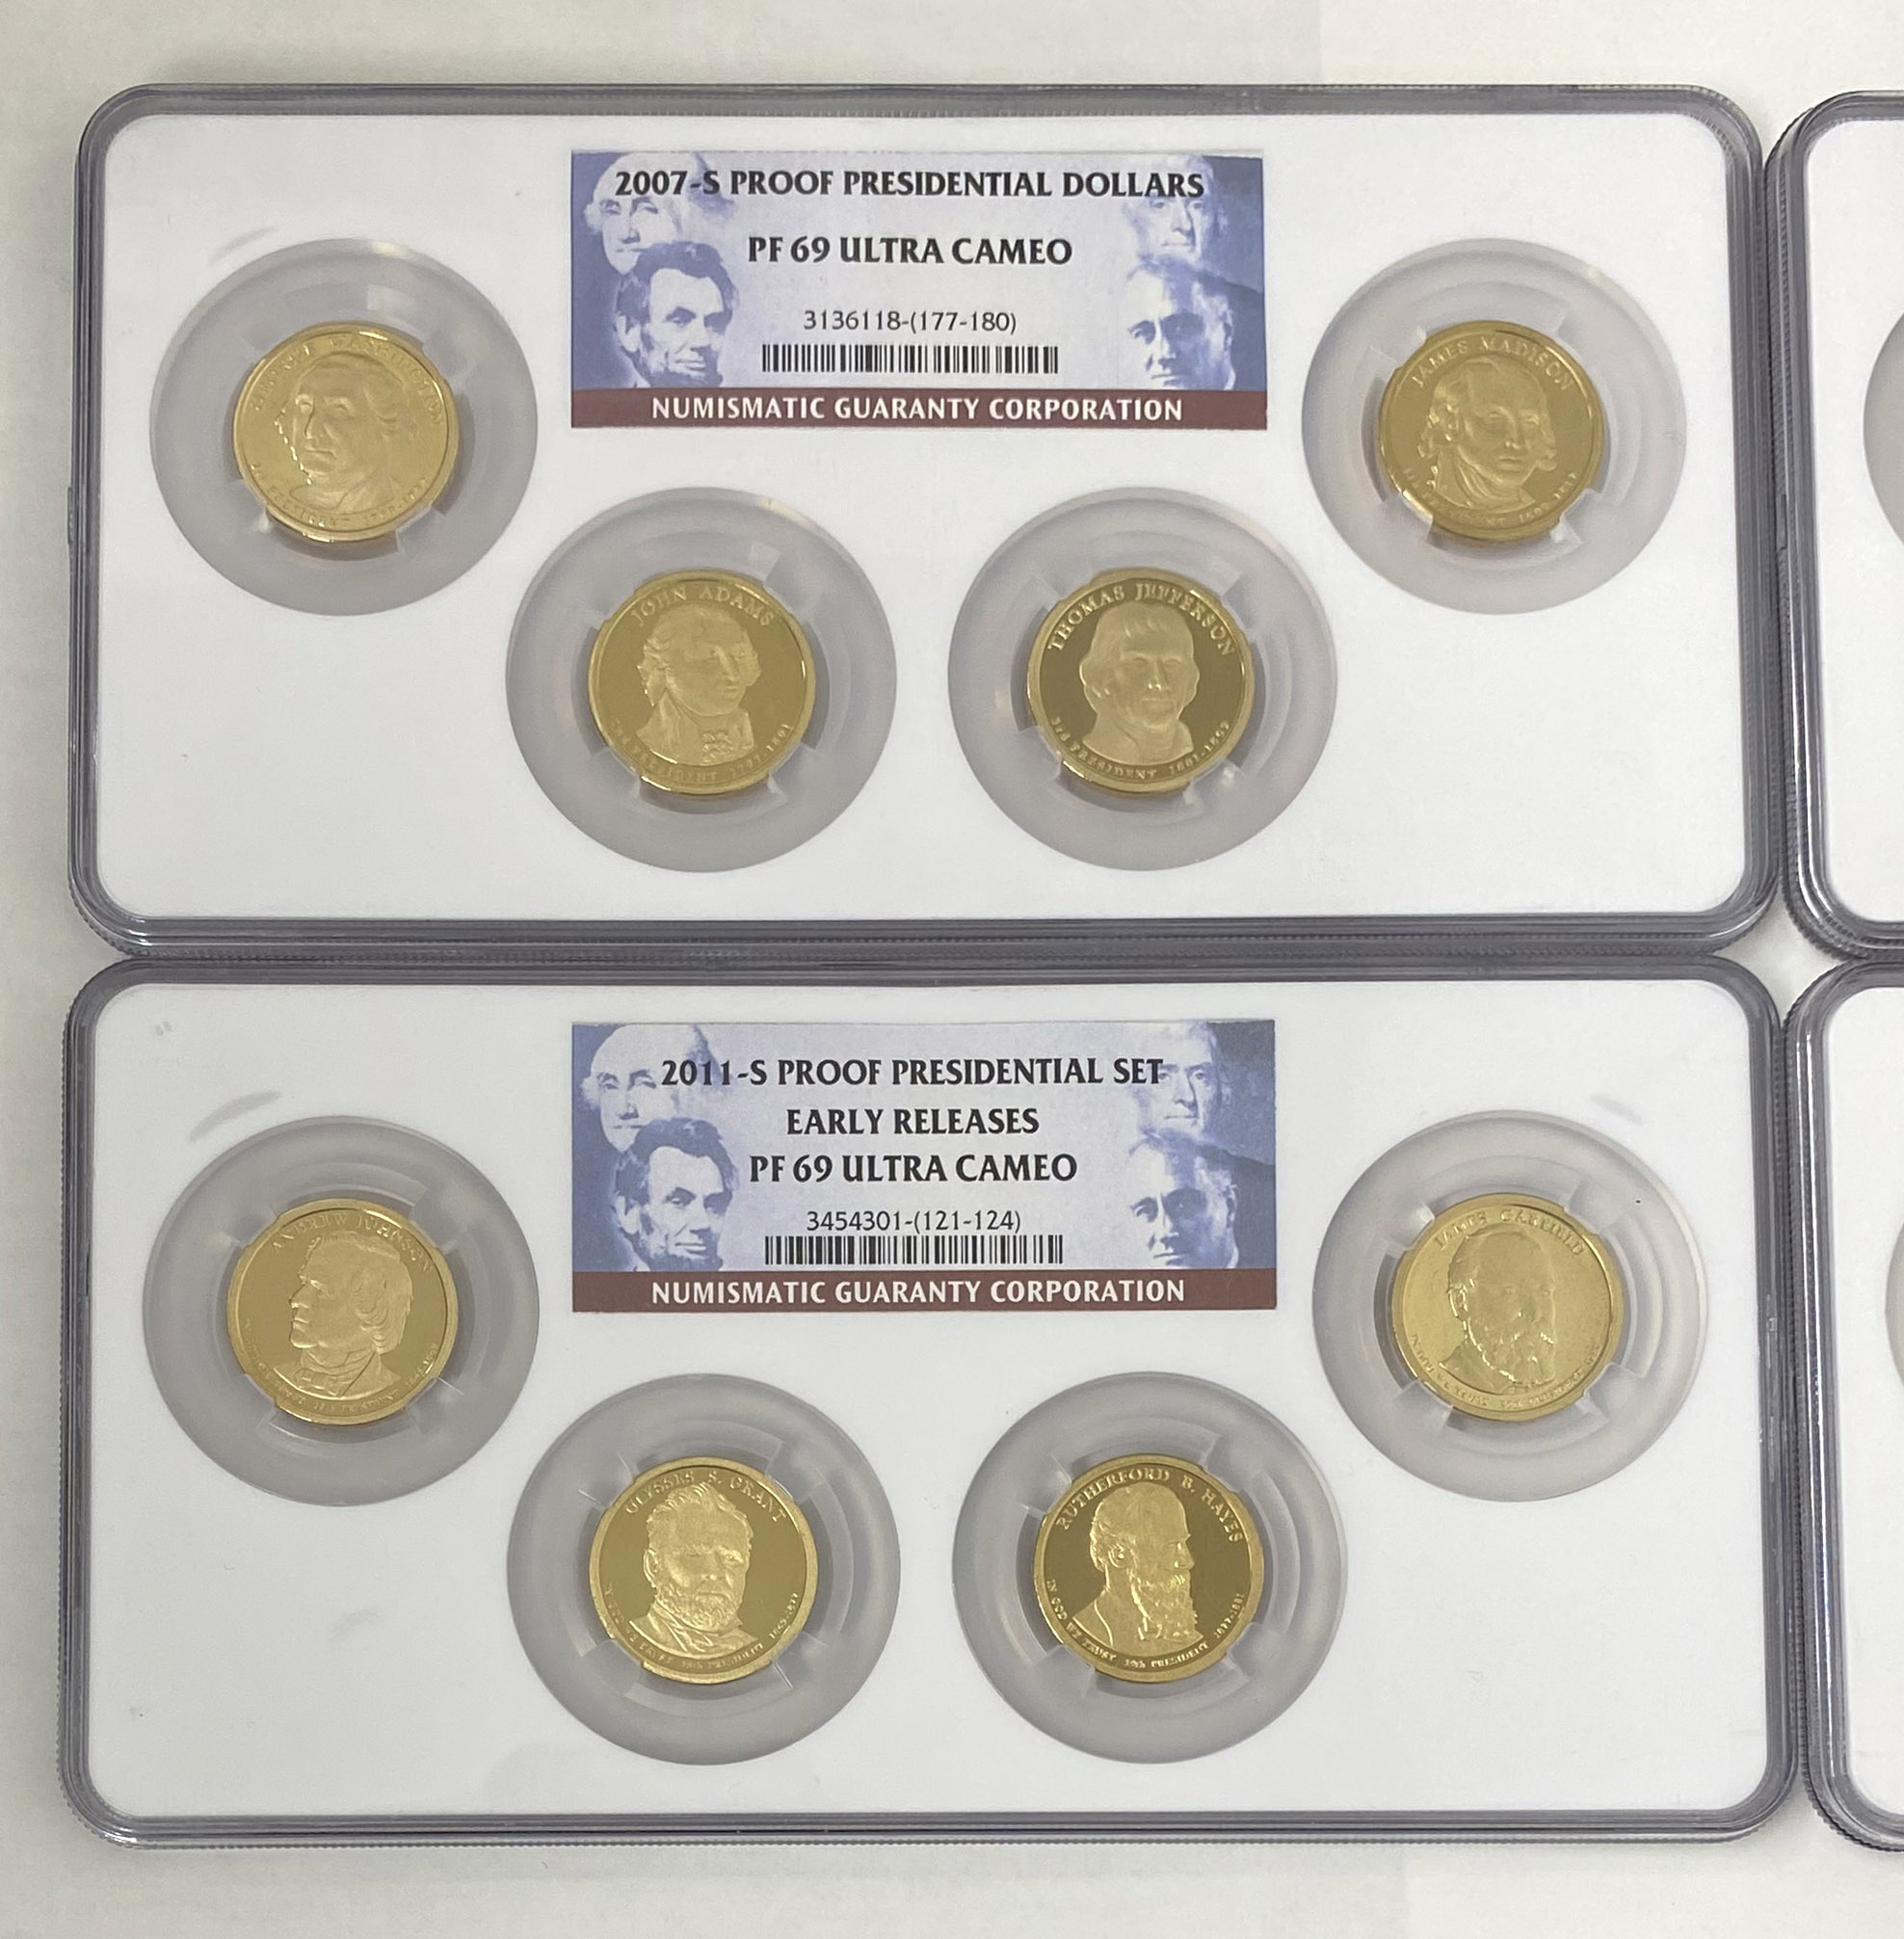 アメリカ大統領1ドル貨コレクション - 旧貨幣/金貨/銀貨/記念硬貨